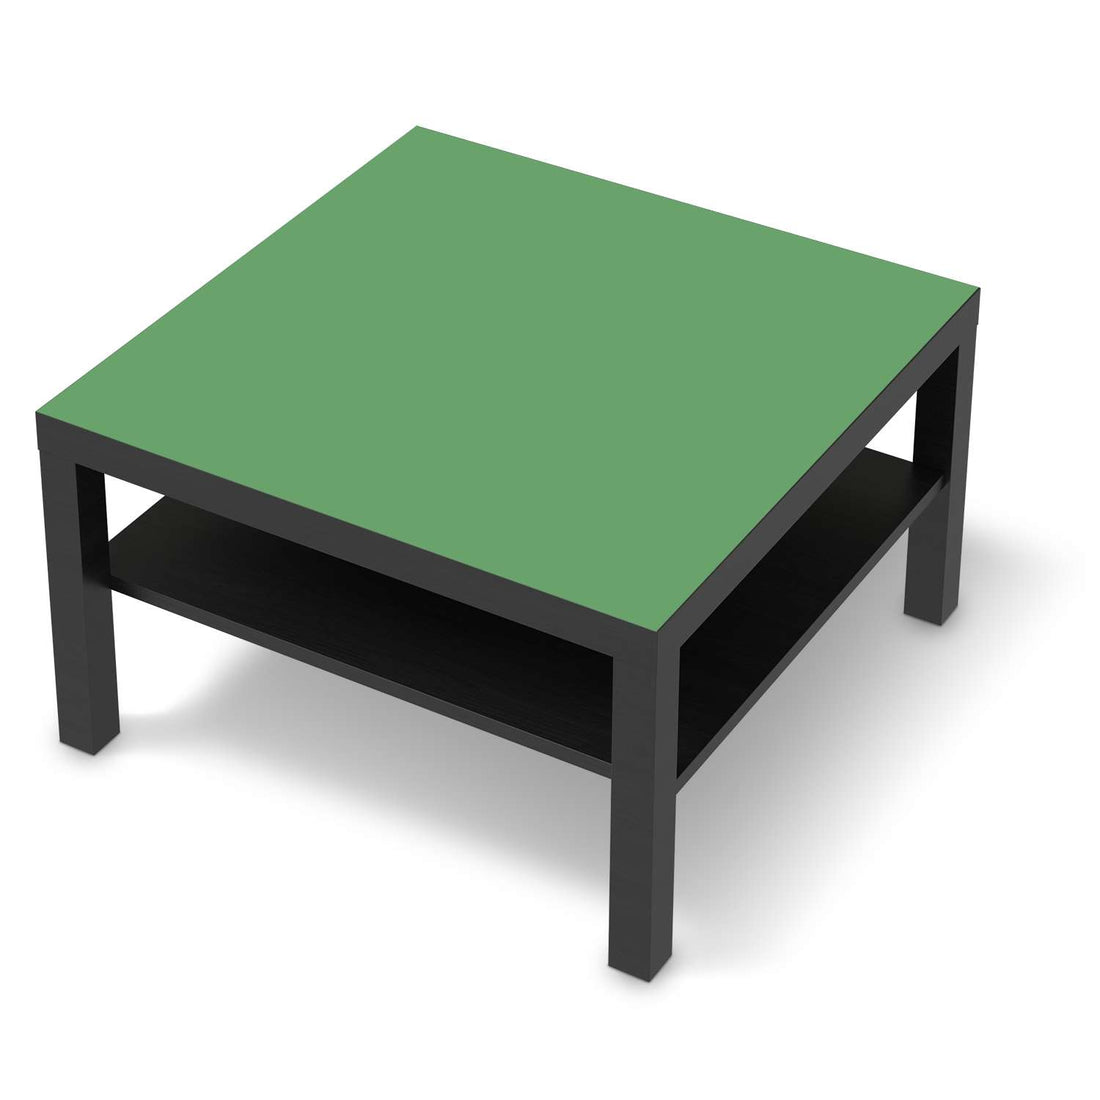 Selbstklebende Folie Grün Light - IKEA Lack Tisch 78x78 cm - schwarz